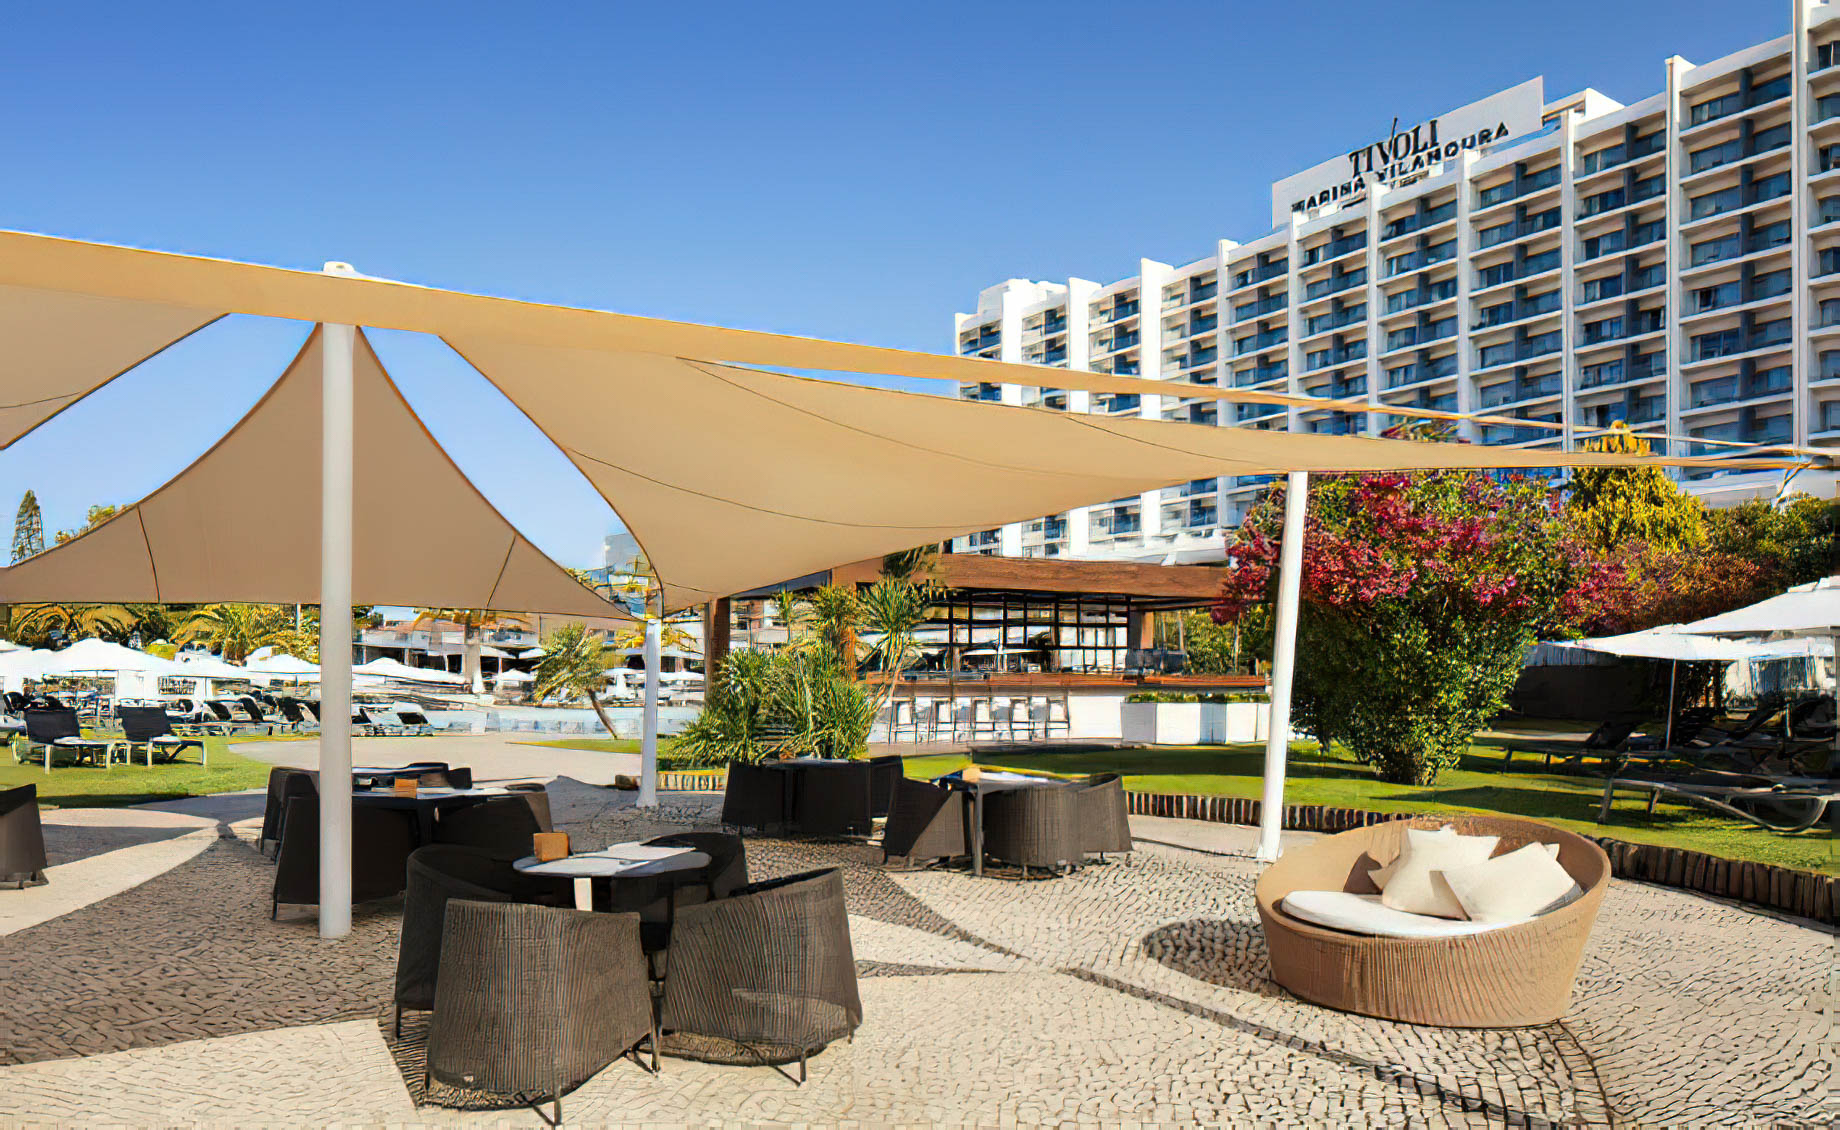 Tivoli Marina Vilamoura Algarve Resort – Portugal – DAzur Pool Bar